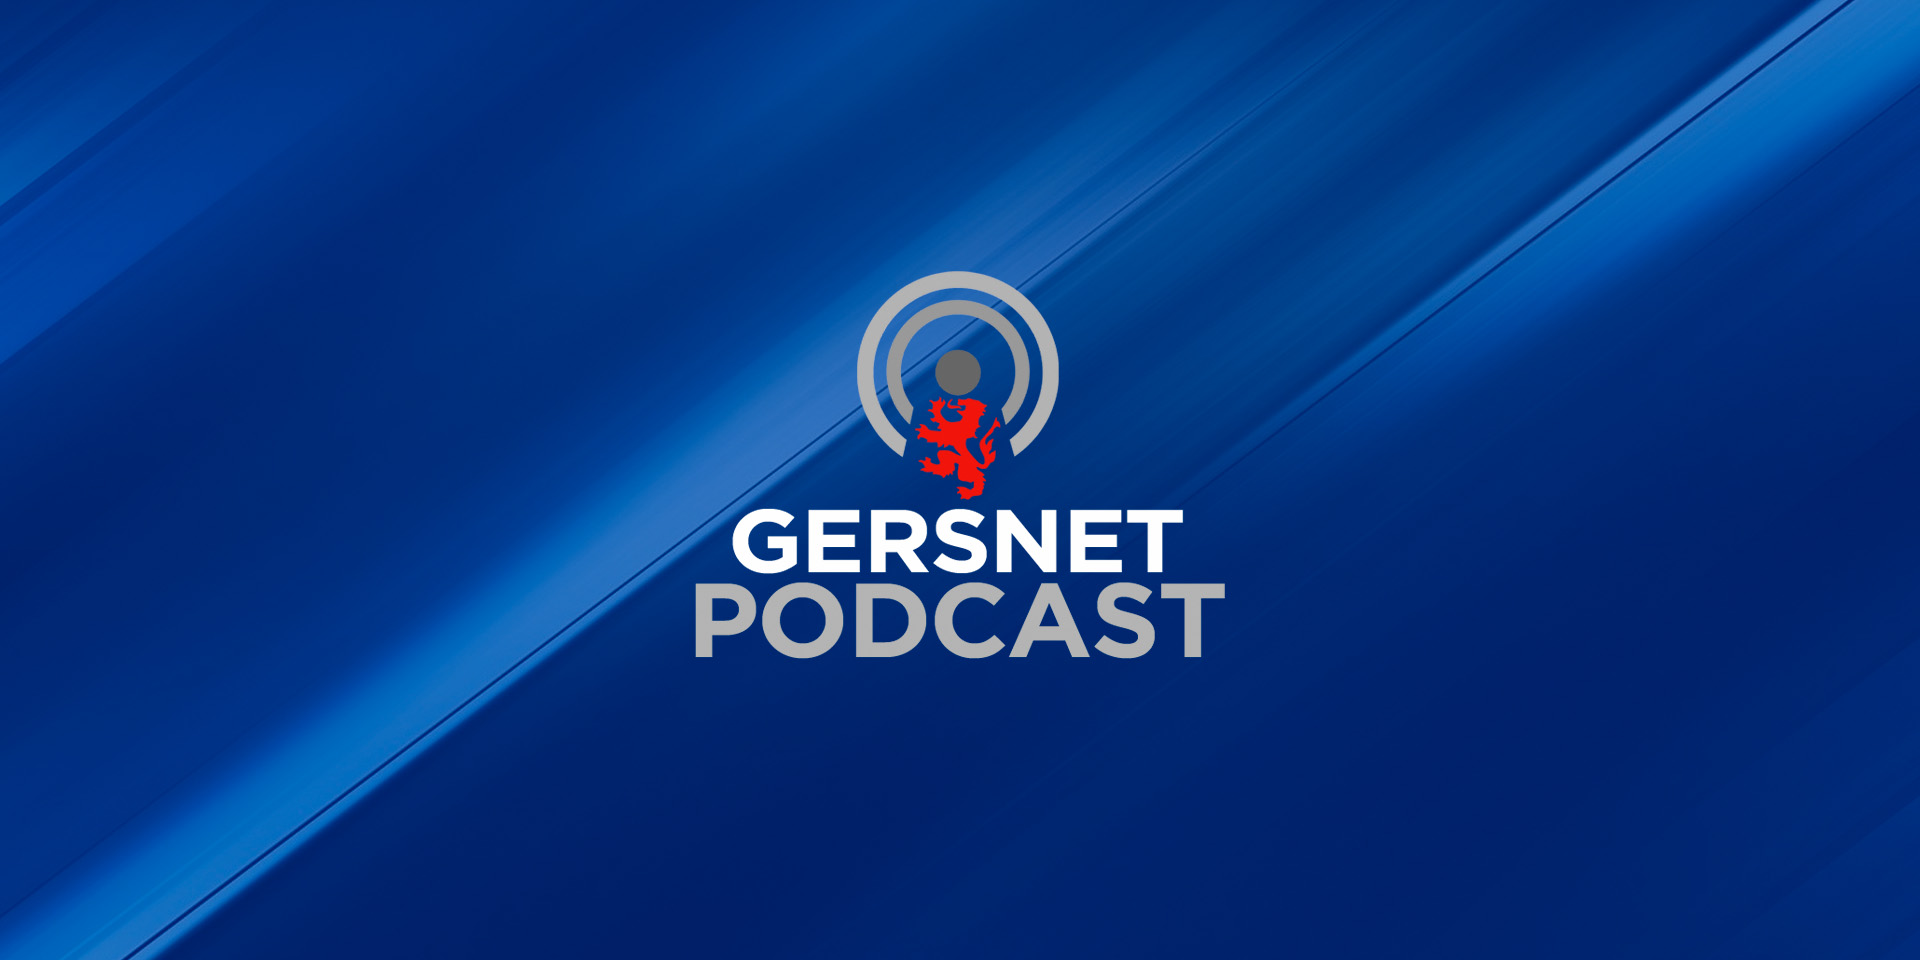 Gersnet Podcast 264 - Aberdeen Preview